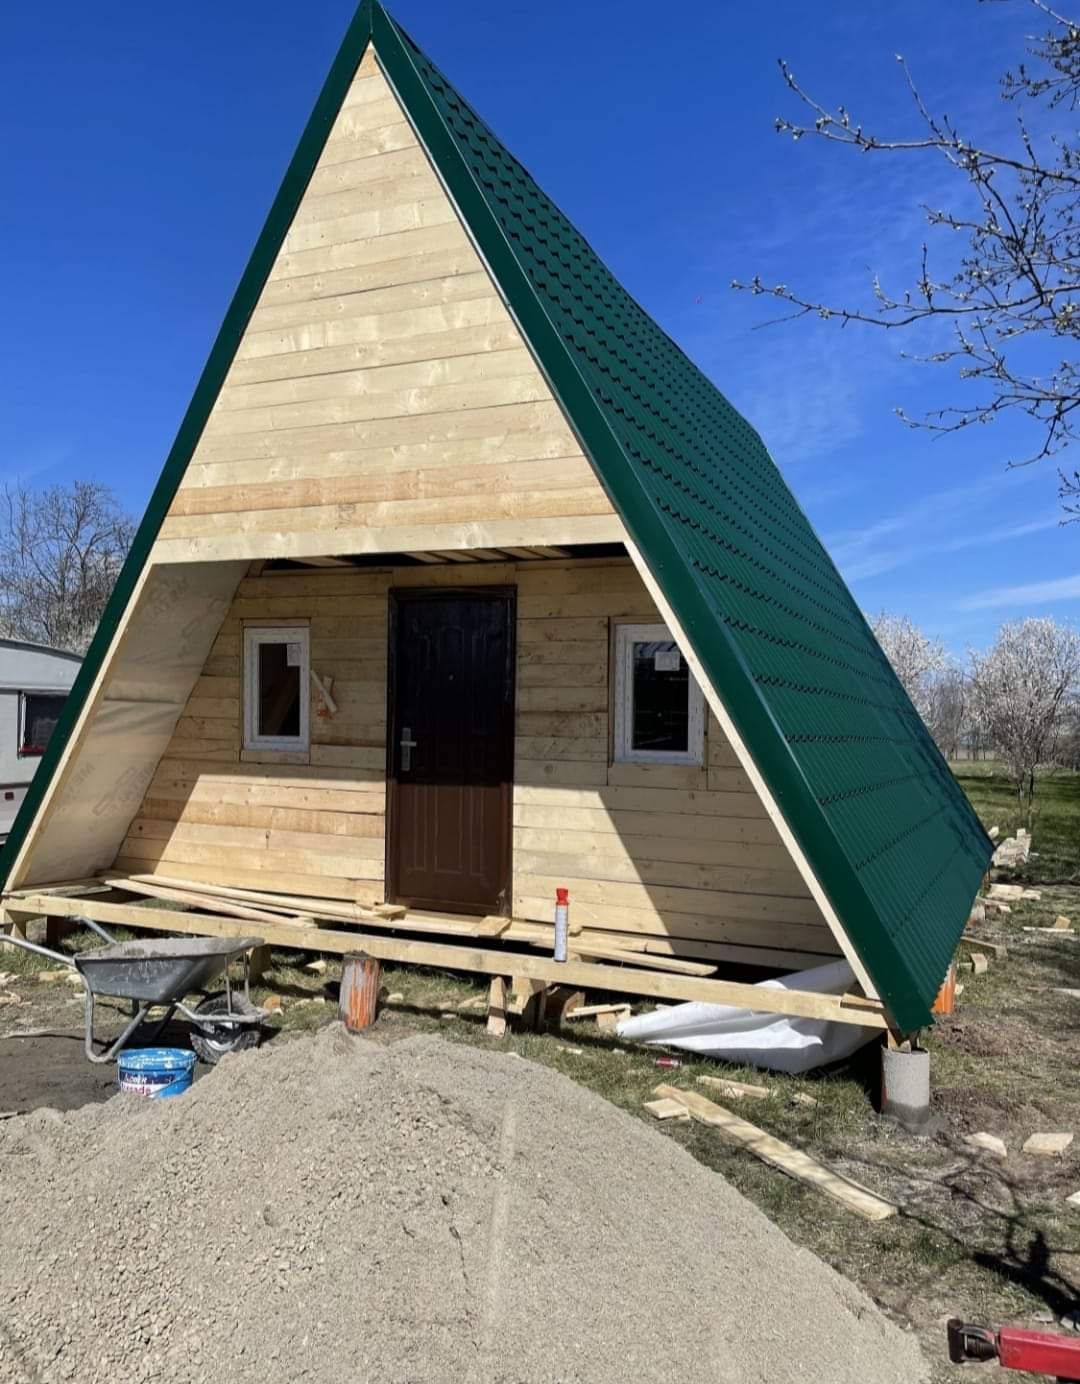 Construim case si cabane de lemn